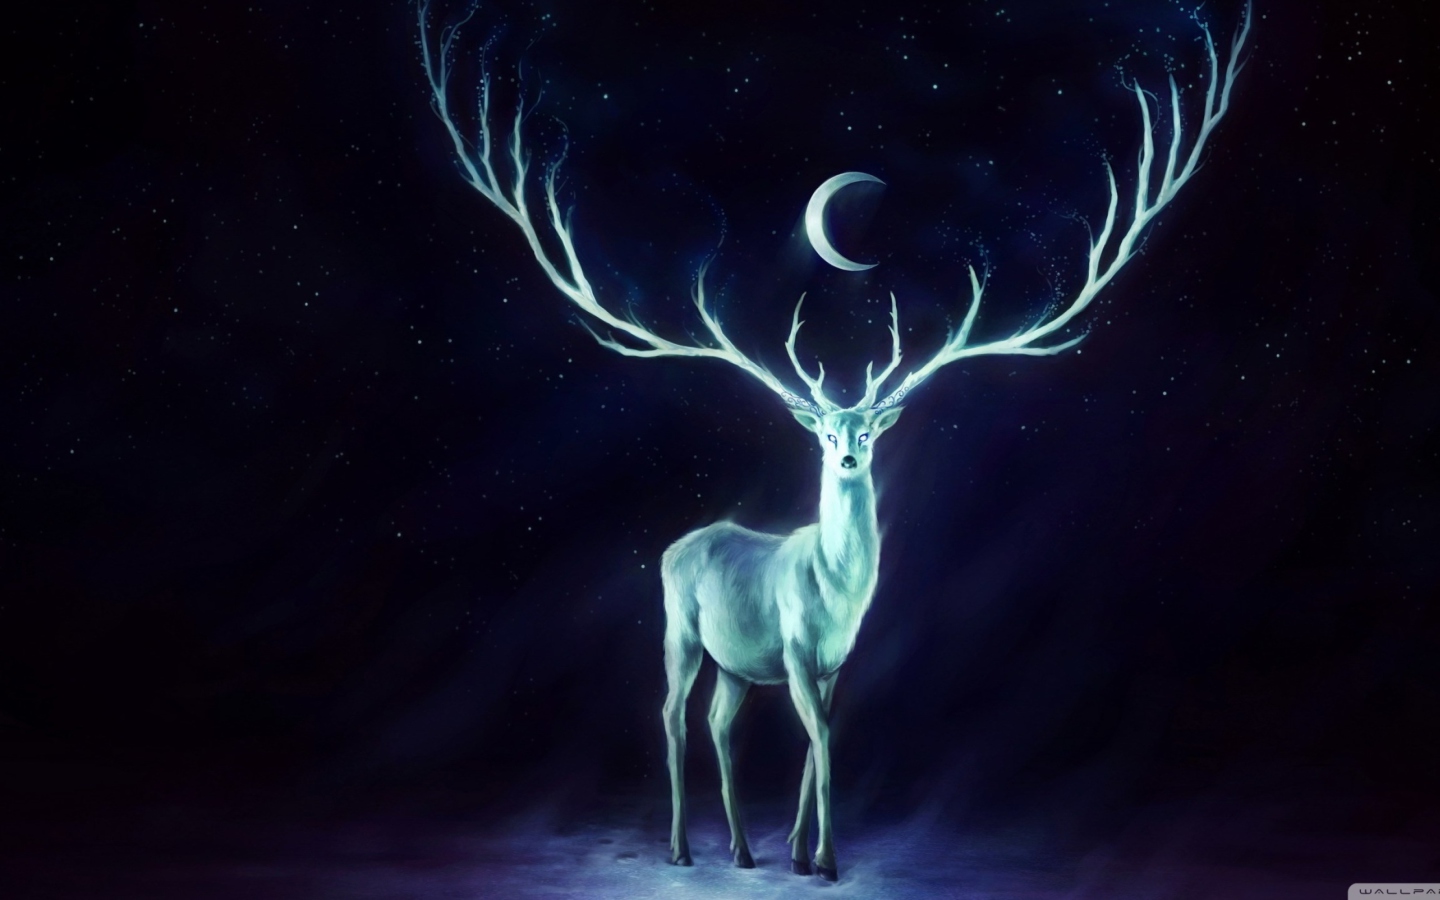 Magic Deer Painting wallpaper 1440x900